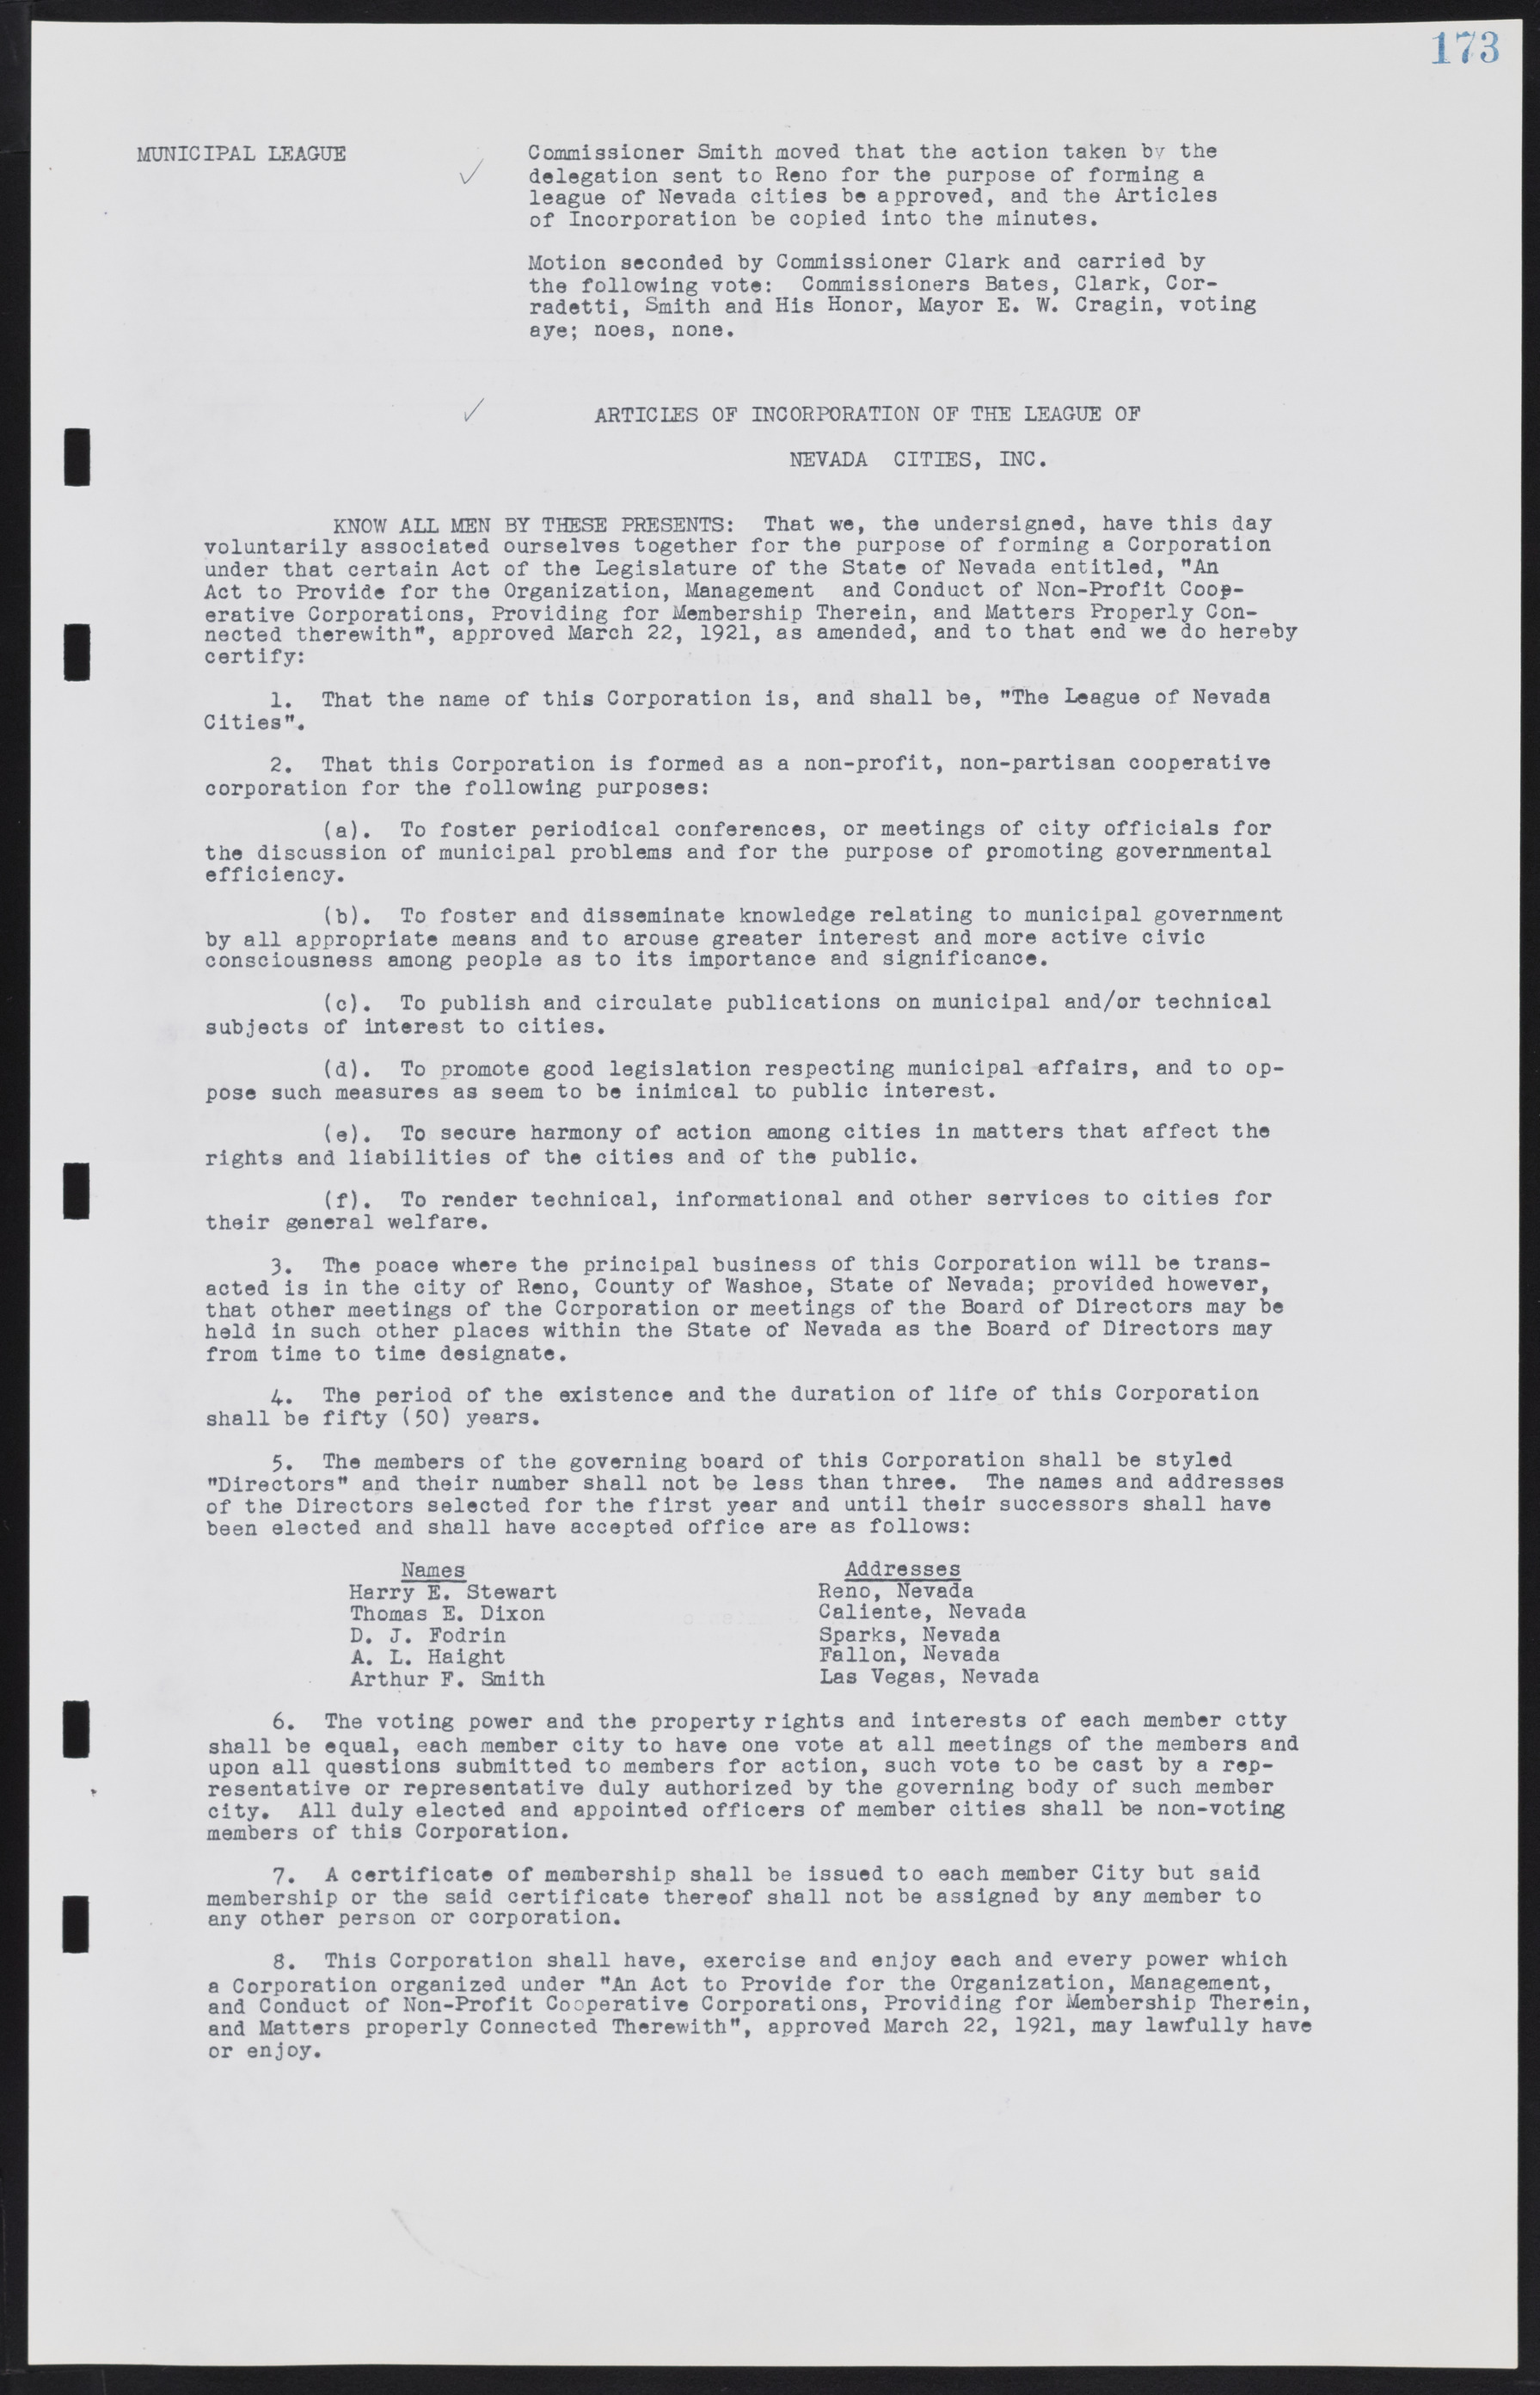 Las Vegas City Commission Minutes, August 11, 1942 to December 30, 1946, lvc000005-192